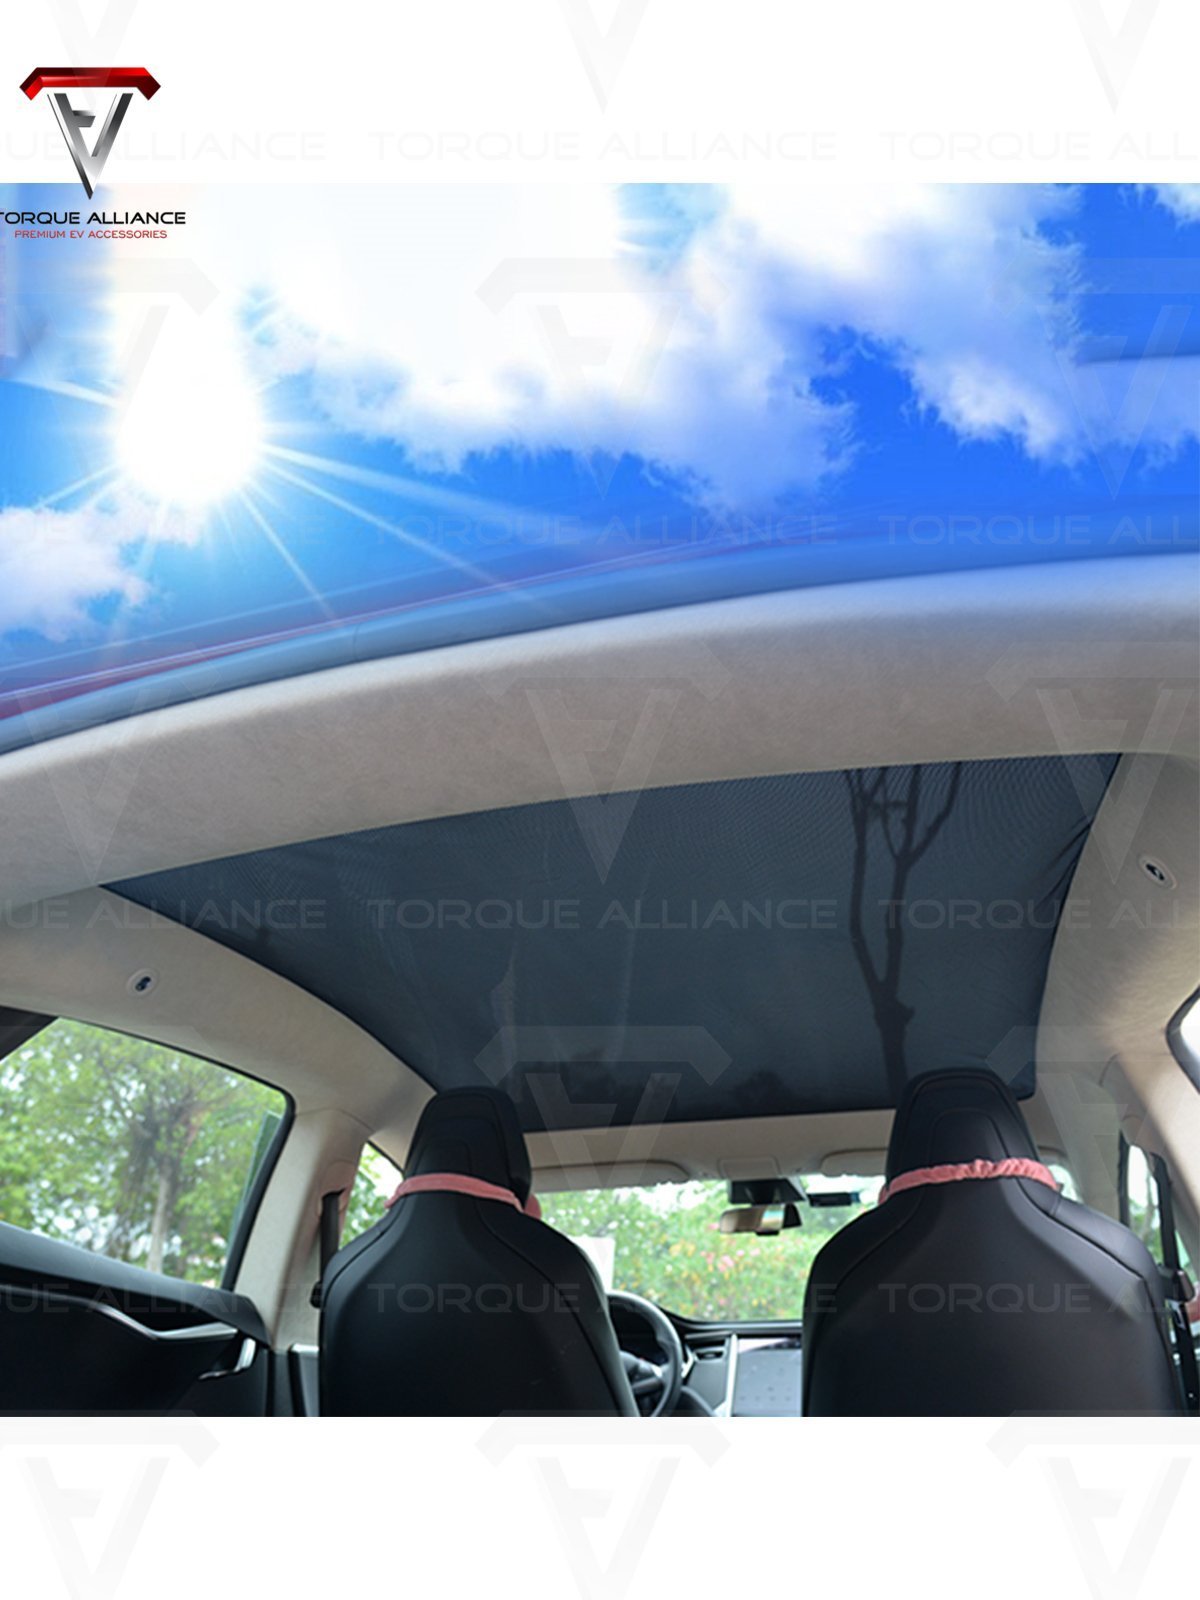 Model S: Sonnenblende für Solardach (3 Stück) - Torque Alliance